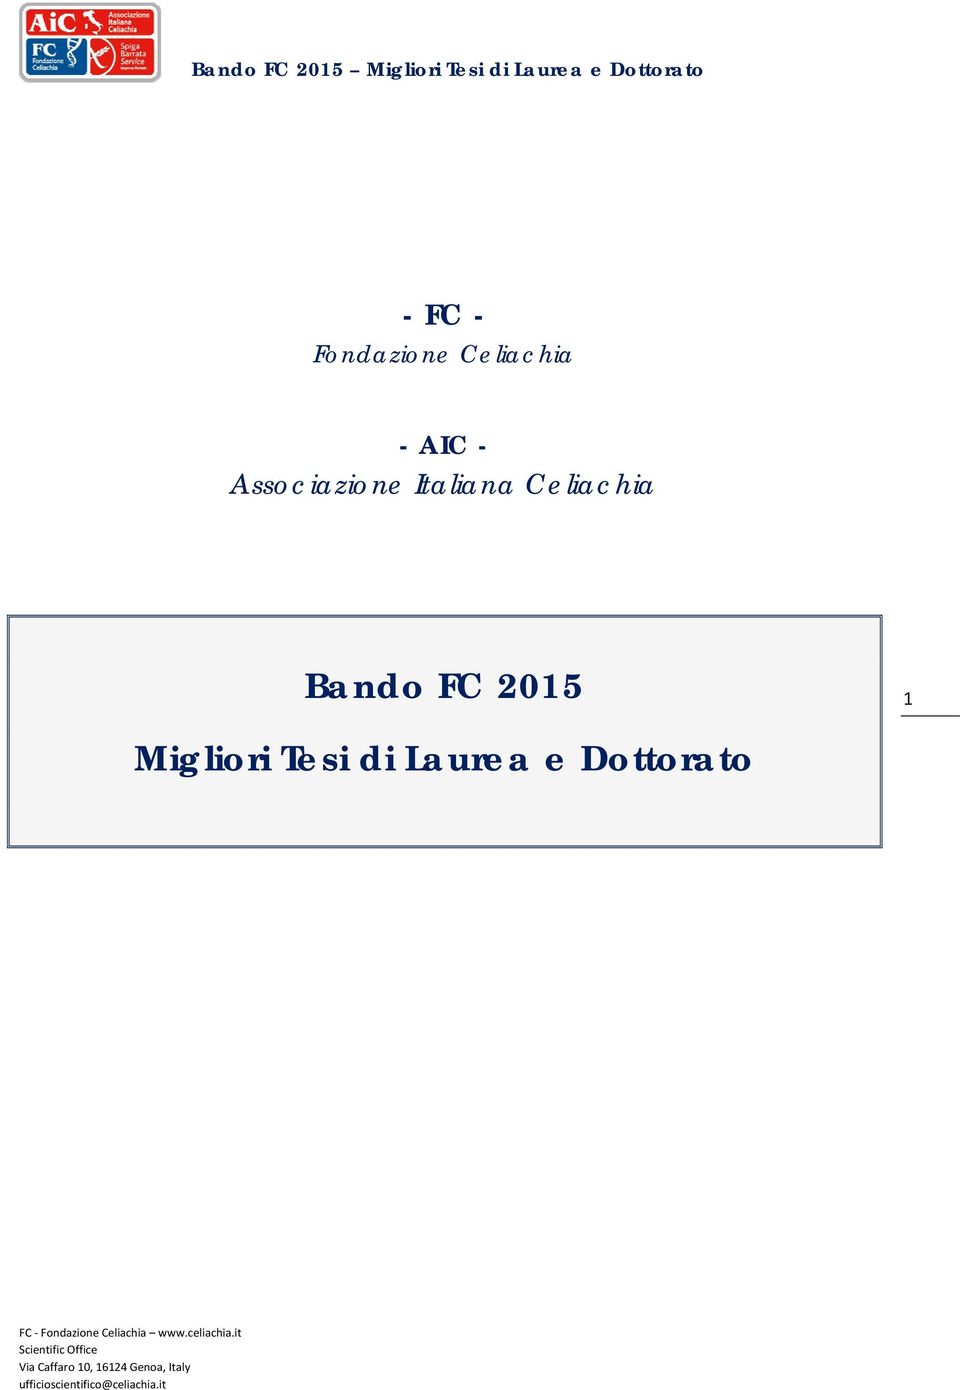 Celiachia Bando FC 2015 1